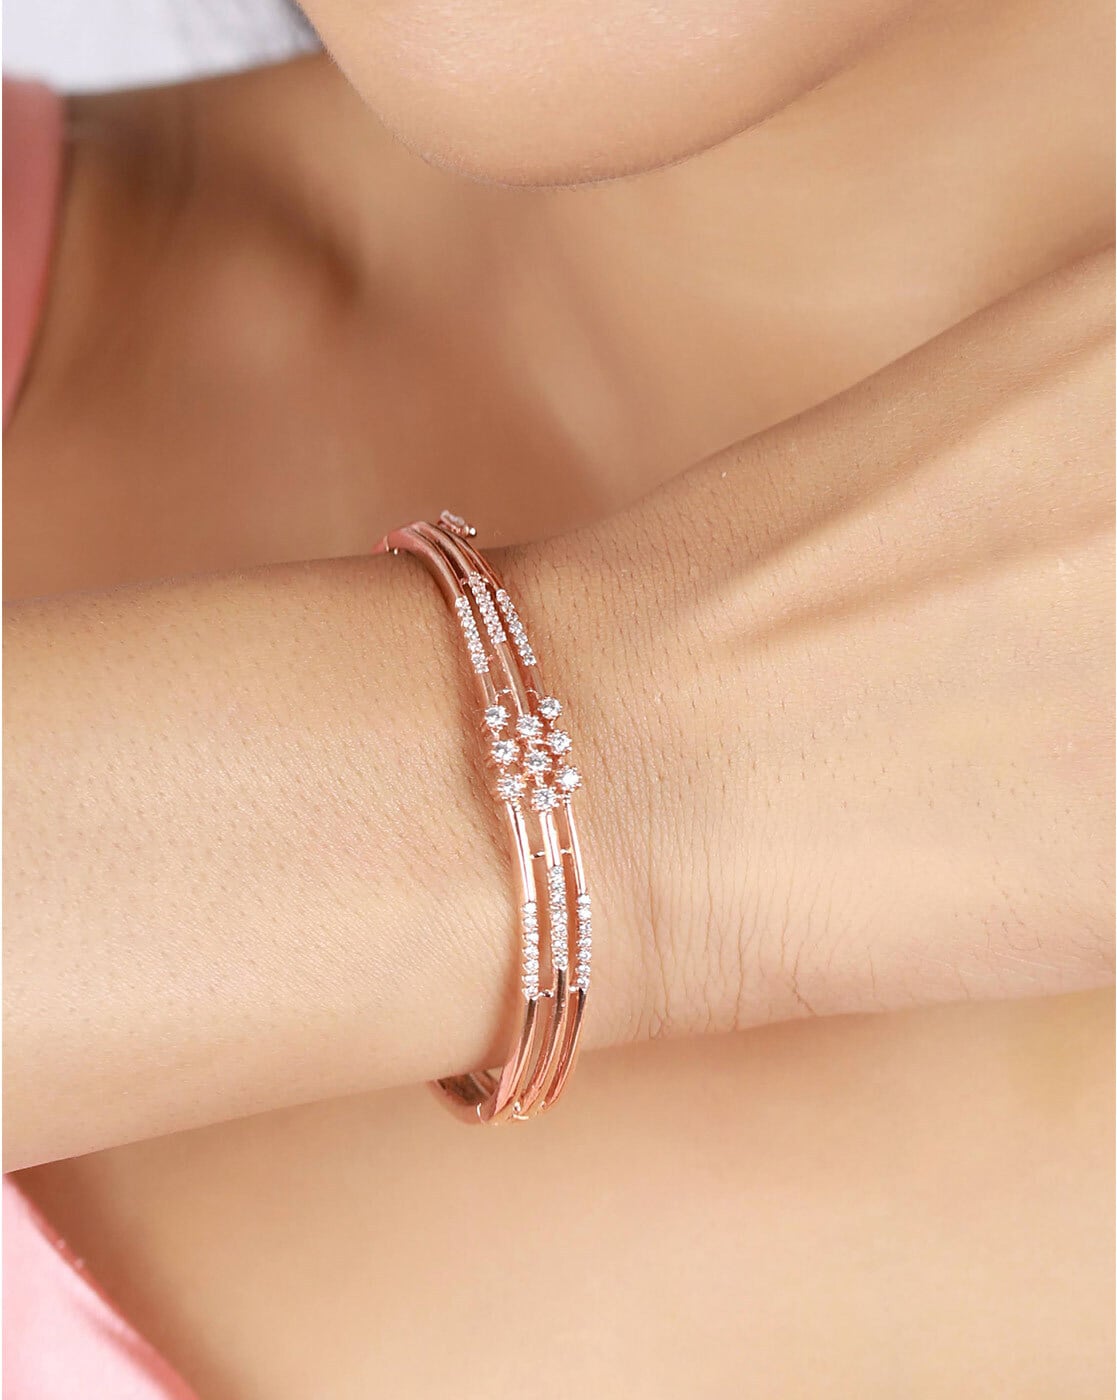 Buy Modern Gold Bracelet Design Open Type Bangle Bracelet Online